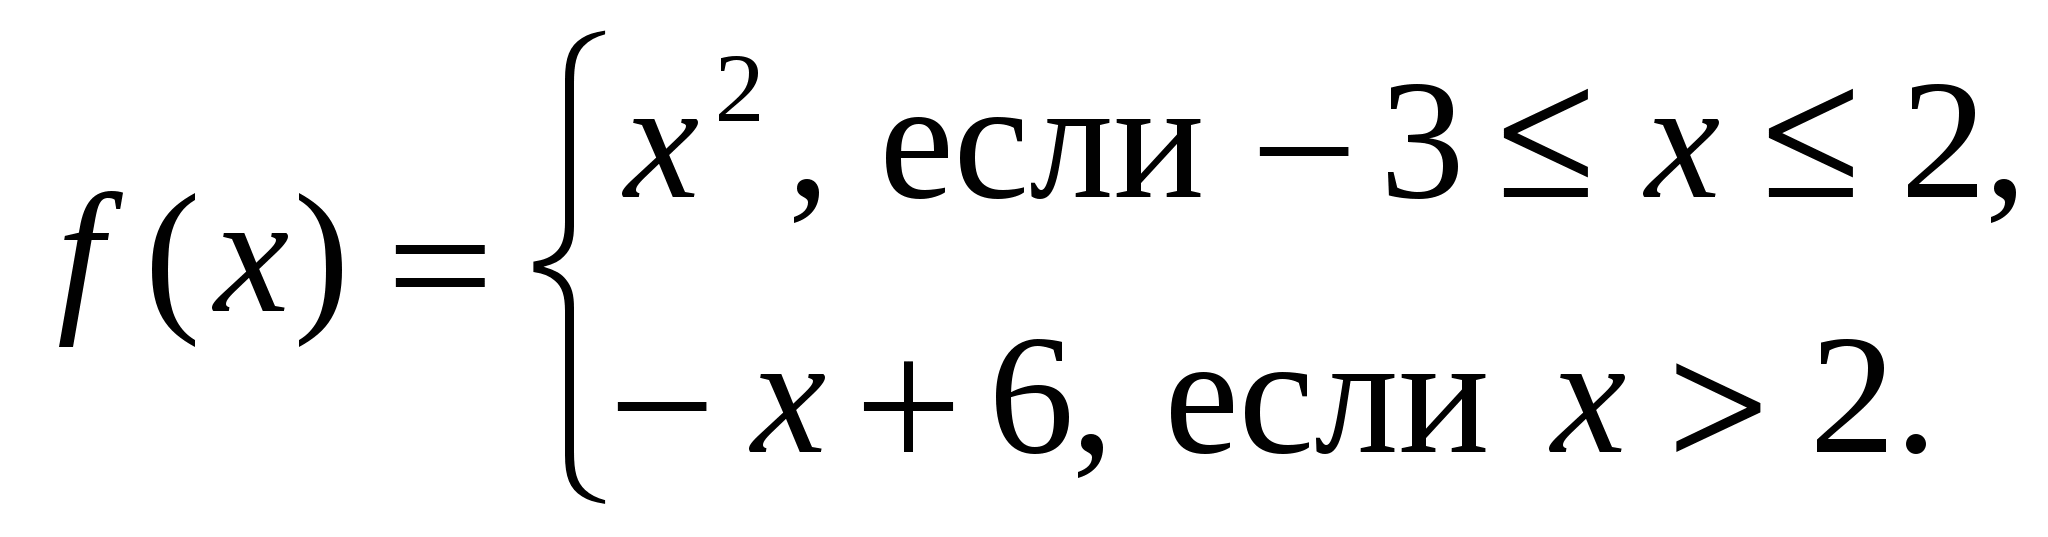 Рабочая программа по математике 5-9 класс (Виленкин, Мордкович, Погорелов) - Базовый уровень